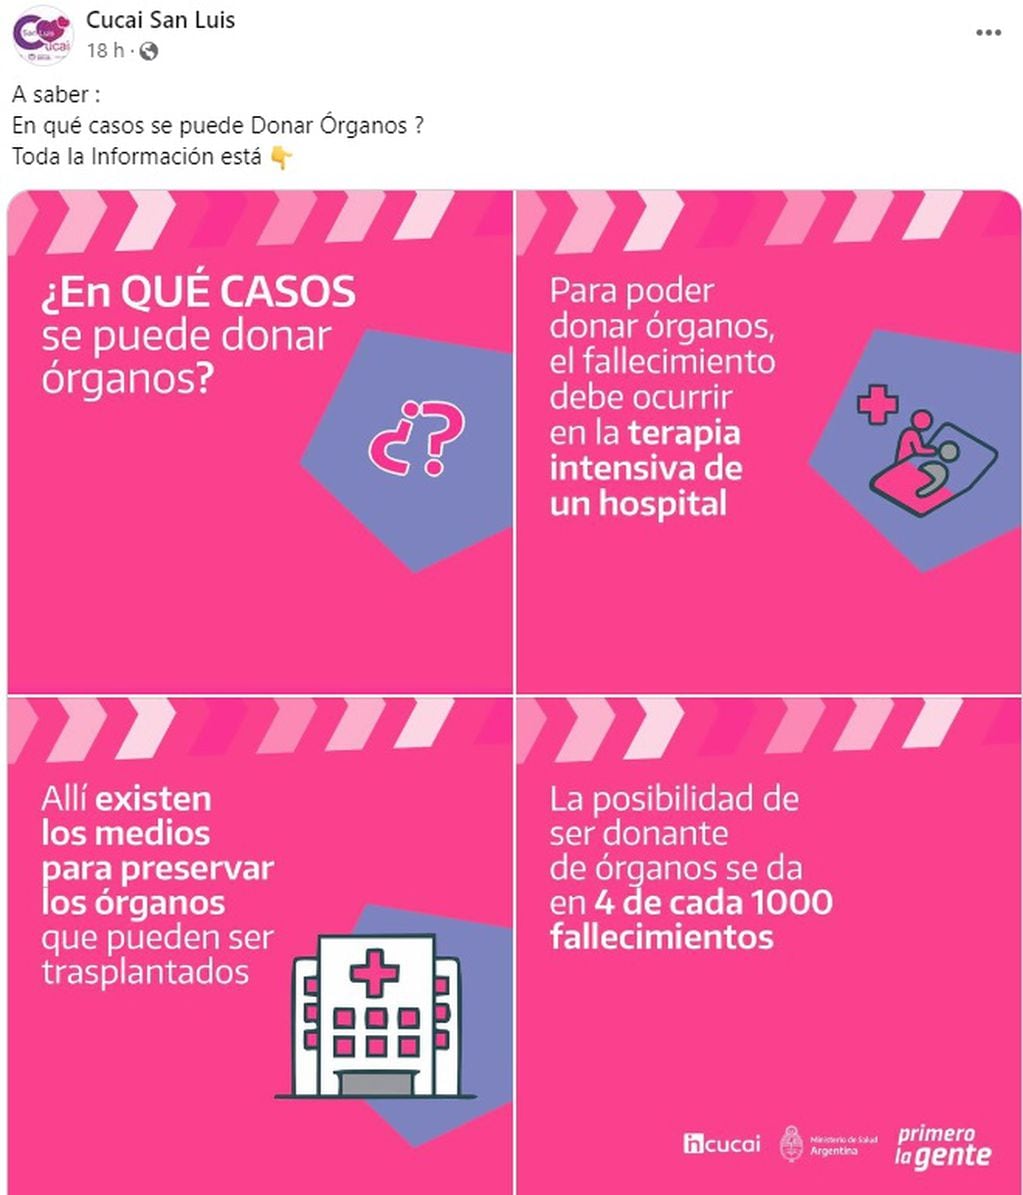 Cucai San Luis informó en las redes sociales la información relacionada a la donación de órganos humanos.